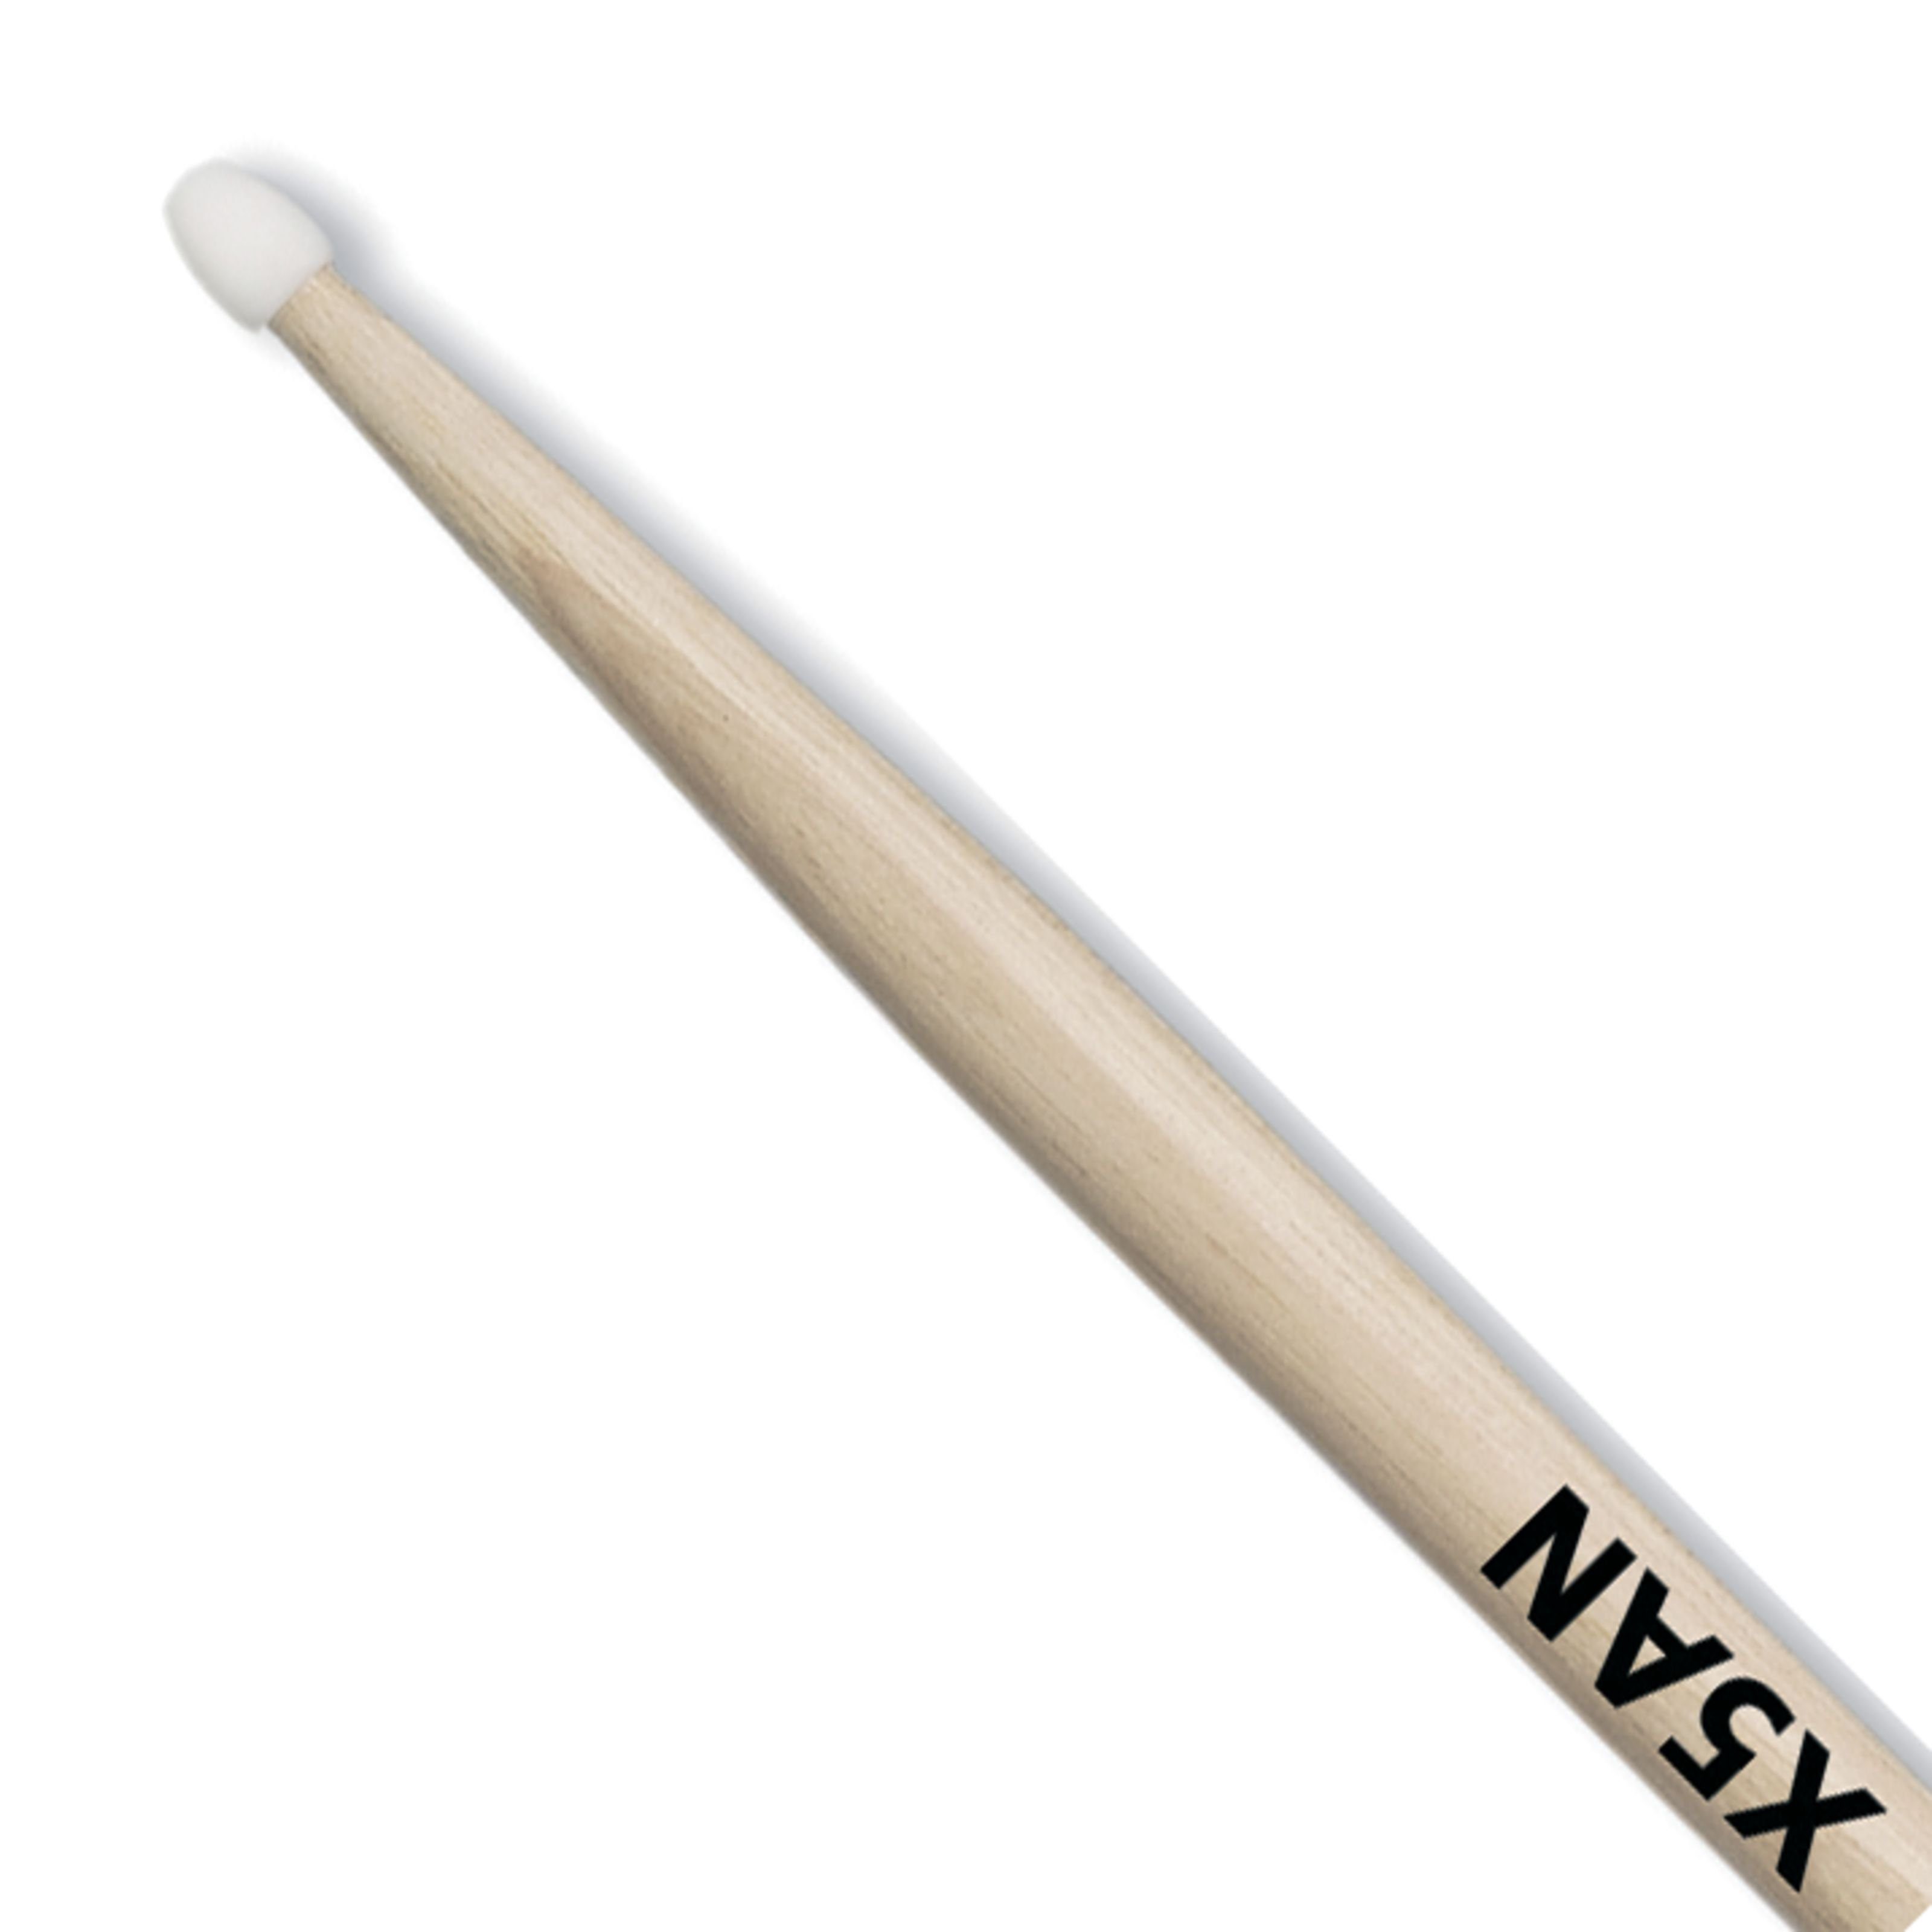 Vic-Firth Drumsticks (X5AN Extreme Sticks, American Classic, Nylon Tip), X5AN Extreme Sticks, American Classic, Nylon Tip - Drumsticks